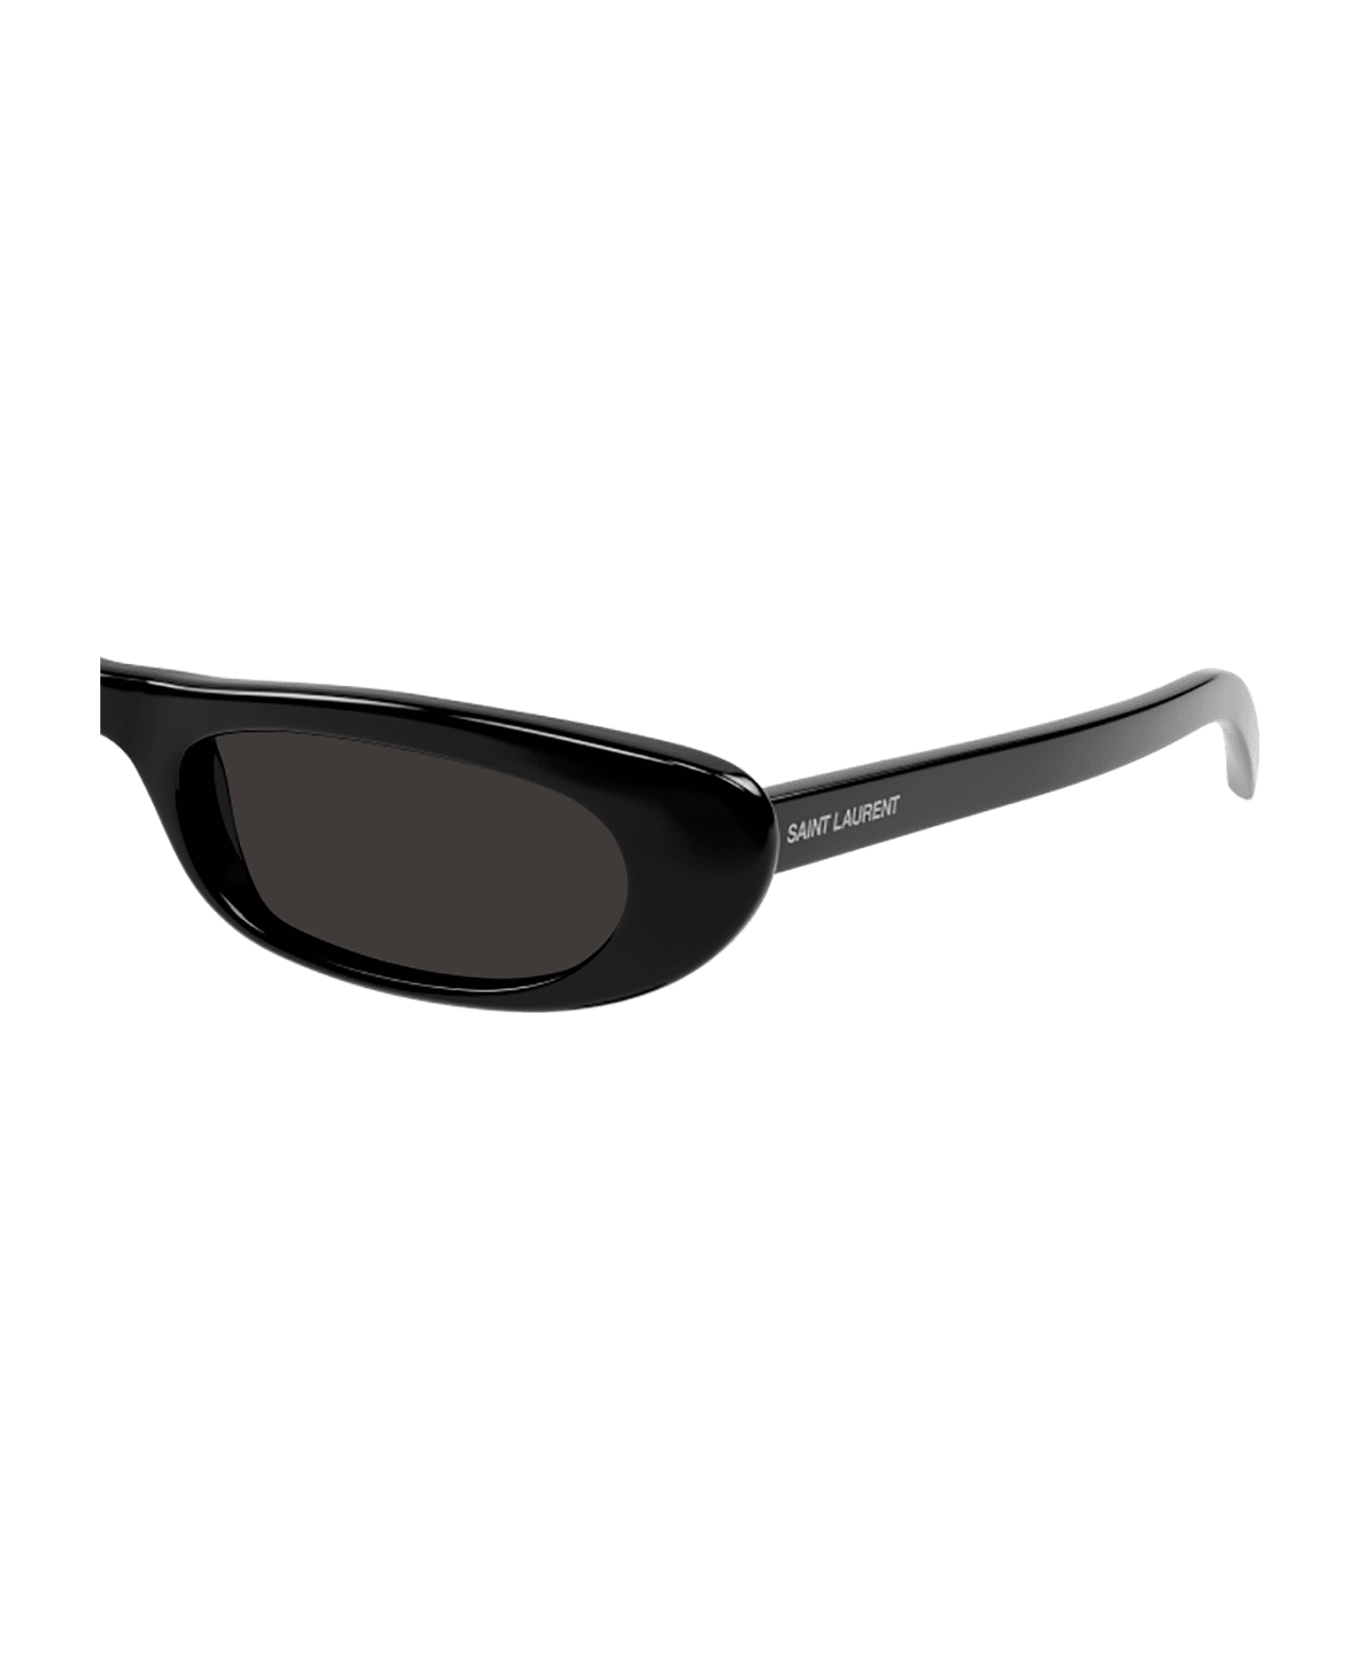 Saint Laurent Eyewear 1e5j4id0a - 001 black black black サングラス